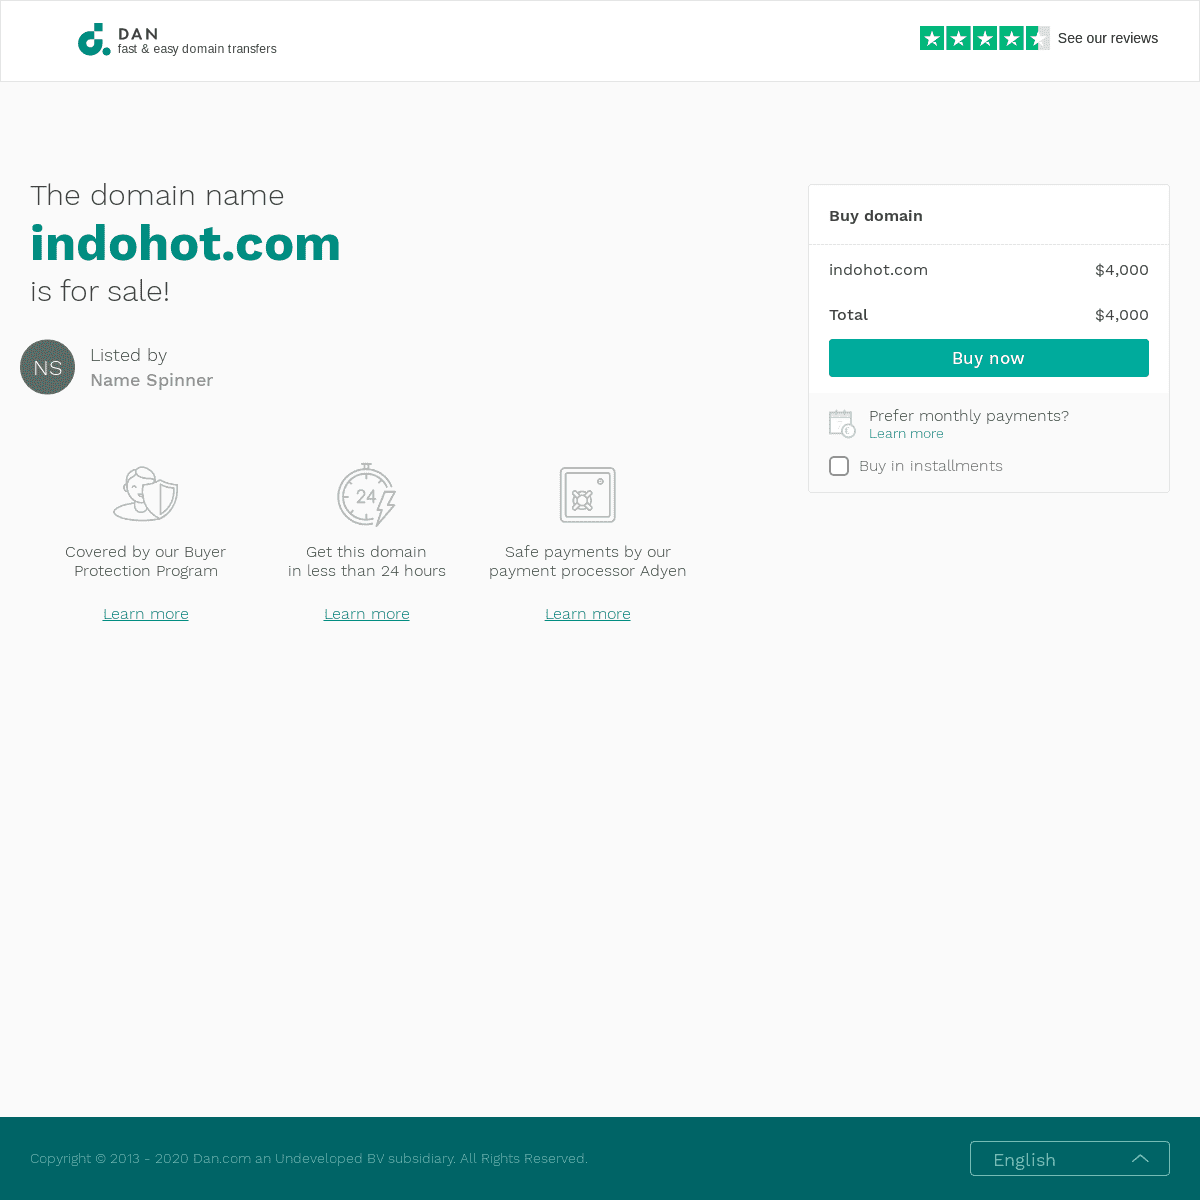 A complete backup of indohot.com